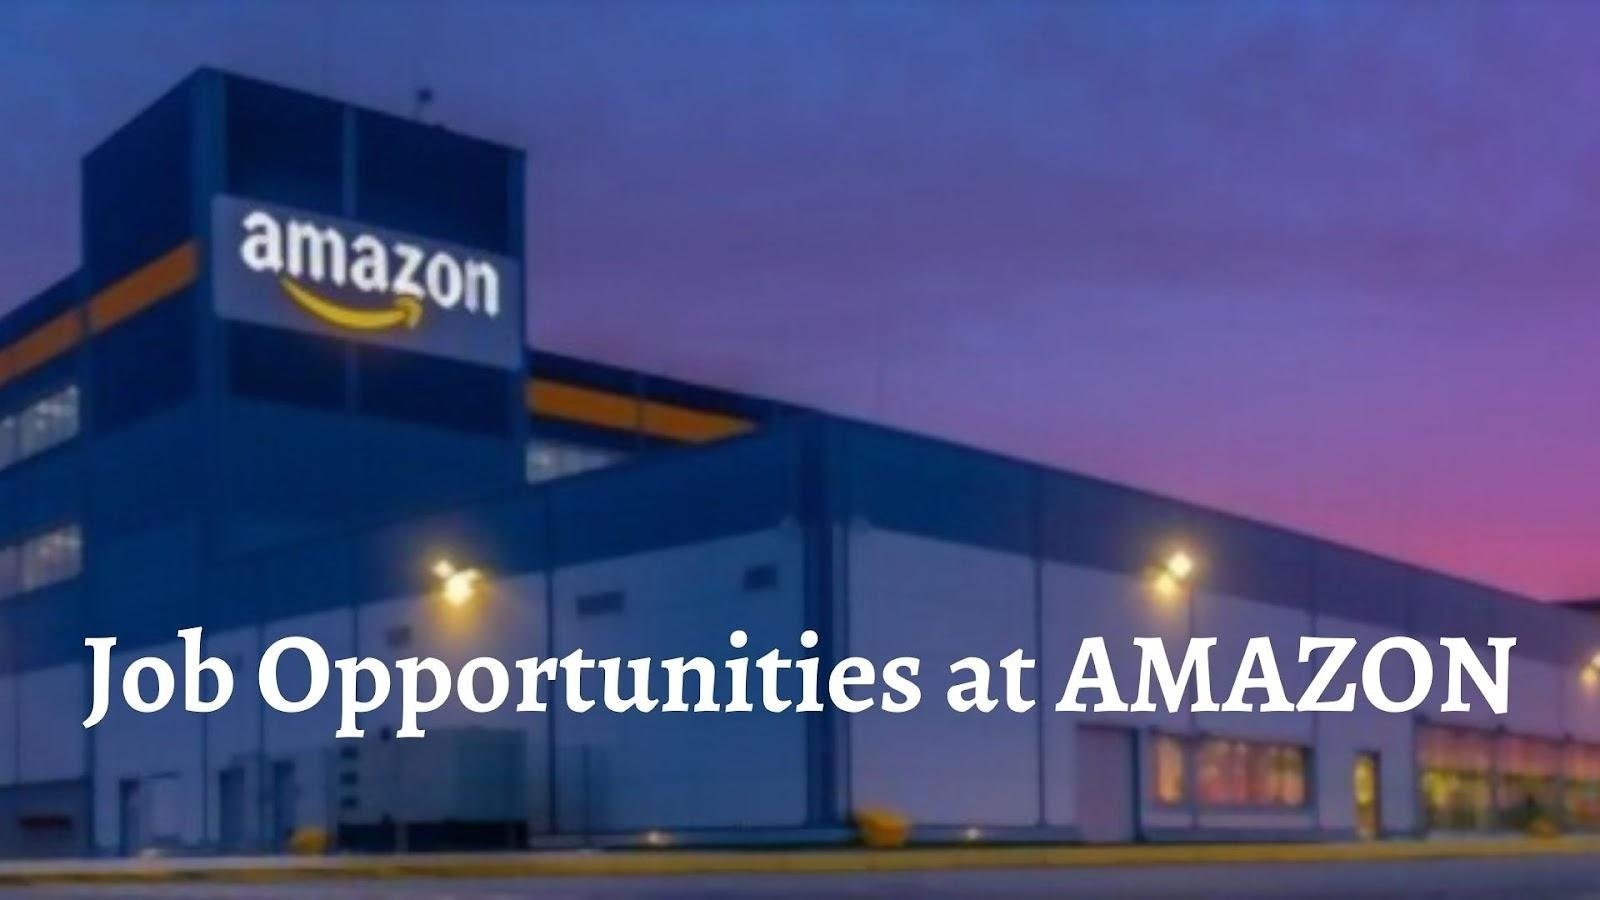 Amazon फेस्टिव सीजन में करेगा 1 लाख भर्तियां, छप्पर फाड़ Jobs का किया ऐलान,